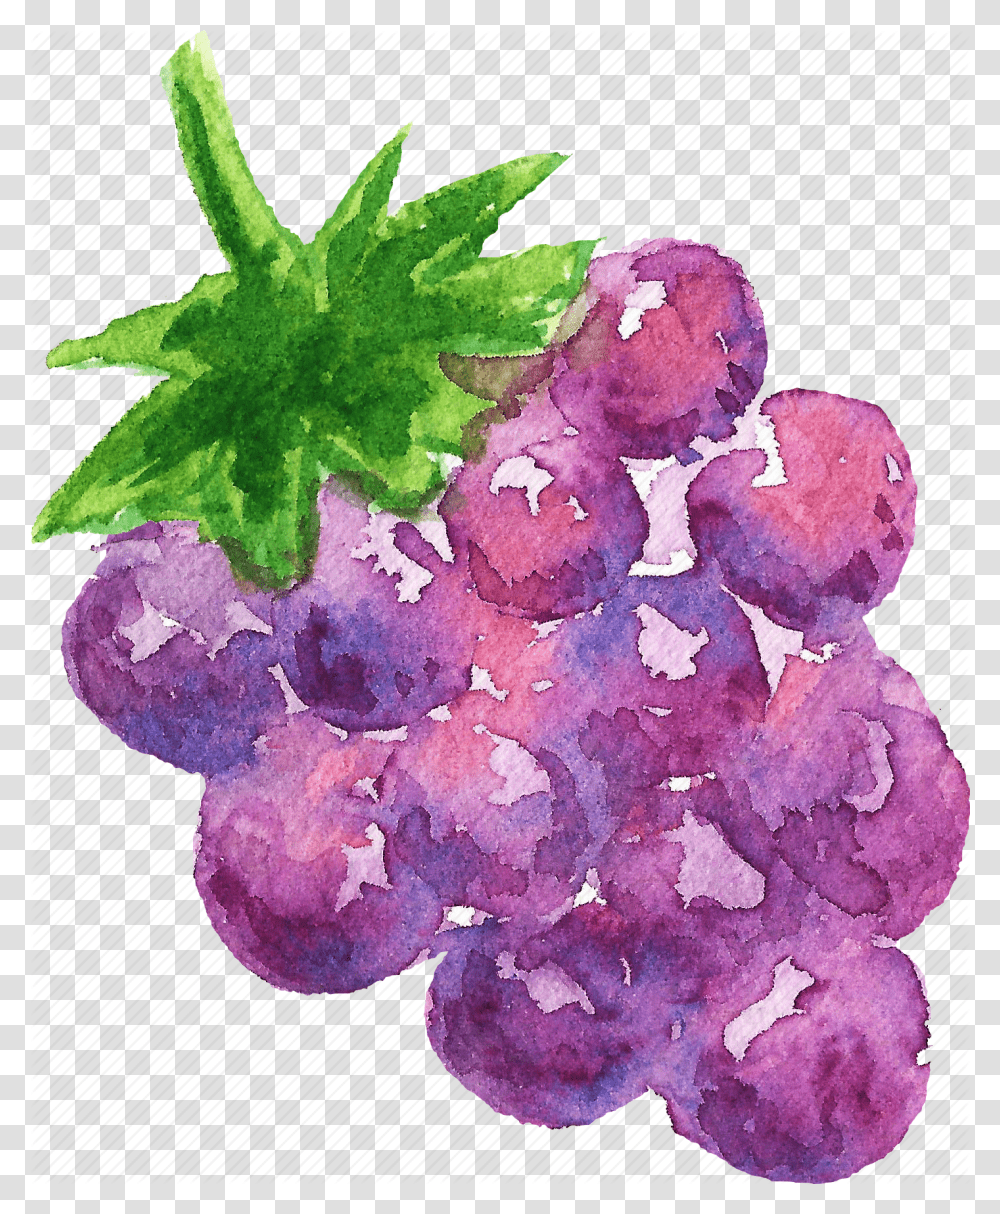 Cuisine Food Fruit Fruits Grape Watercolor Watercolors Watercolor Paint, Plant, Grapes Transparent Png